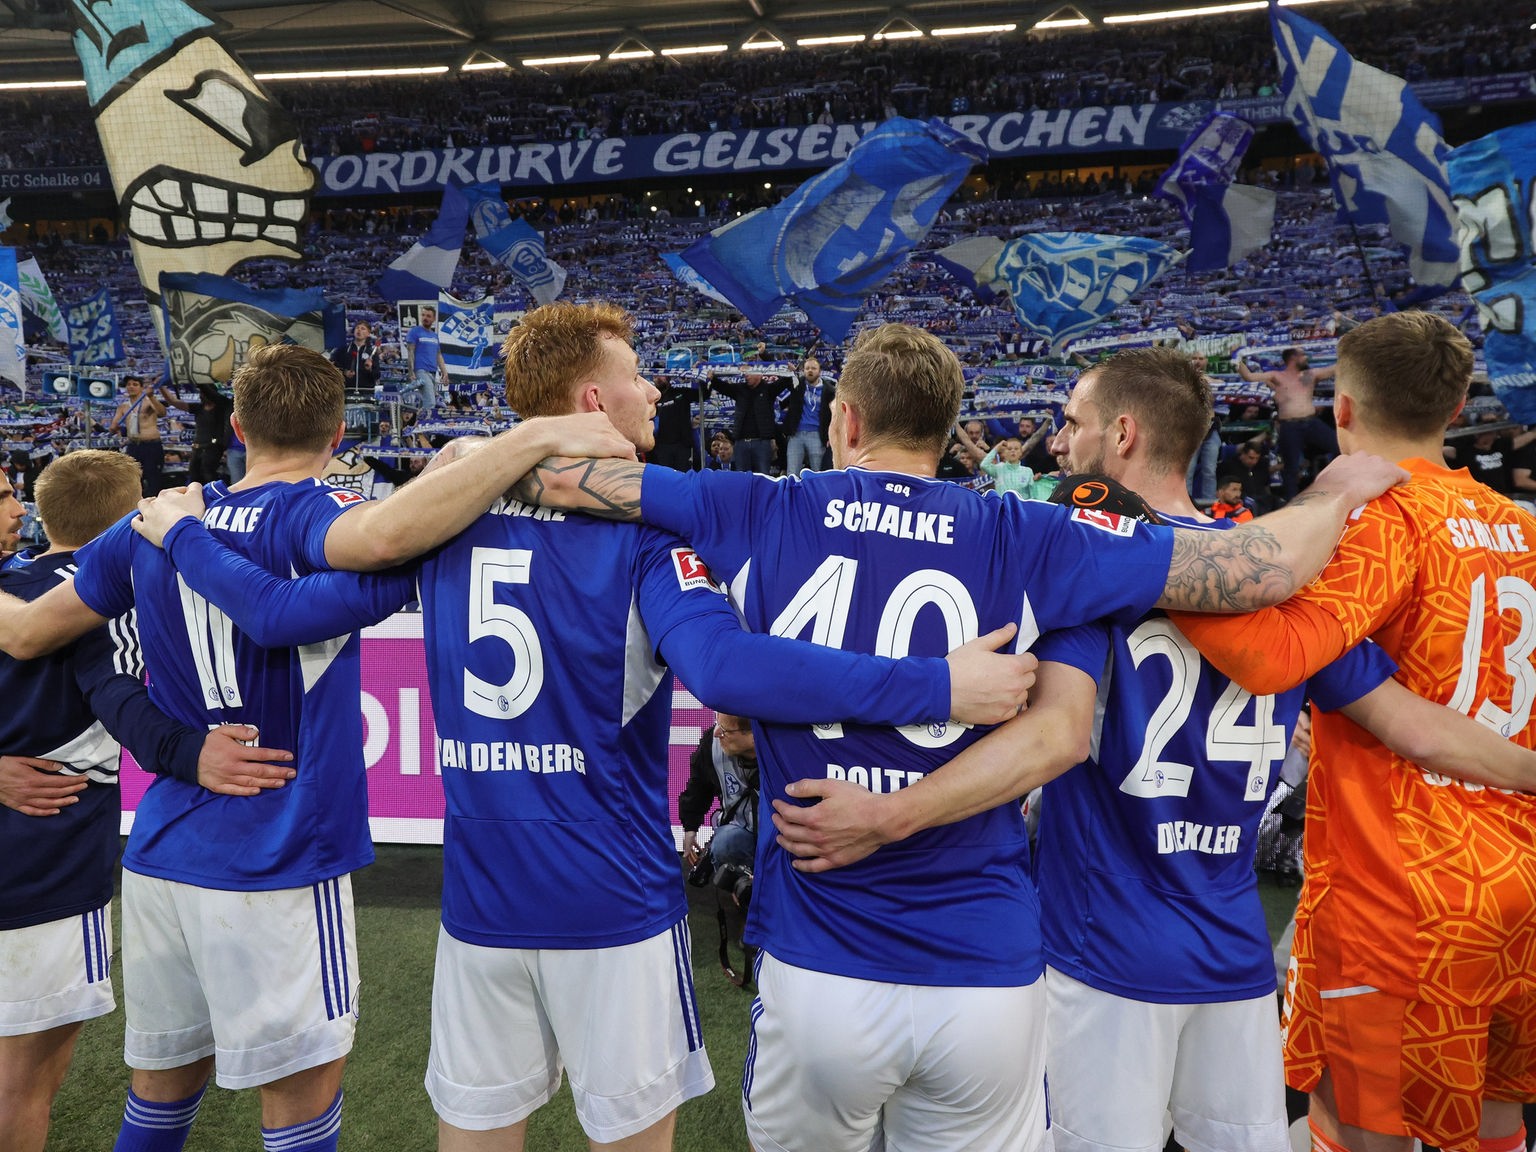 Fußball, Bundesliga Schalke 04 hofft auf Ralf Fährmann - Fußball - Sport